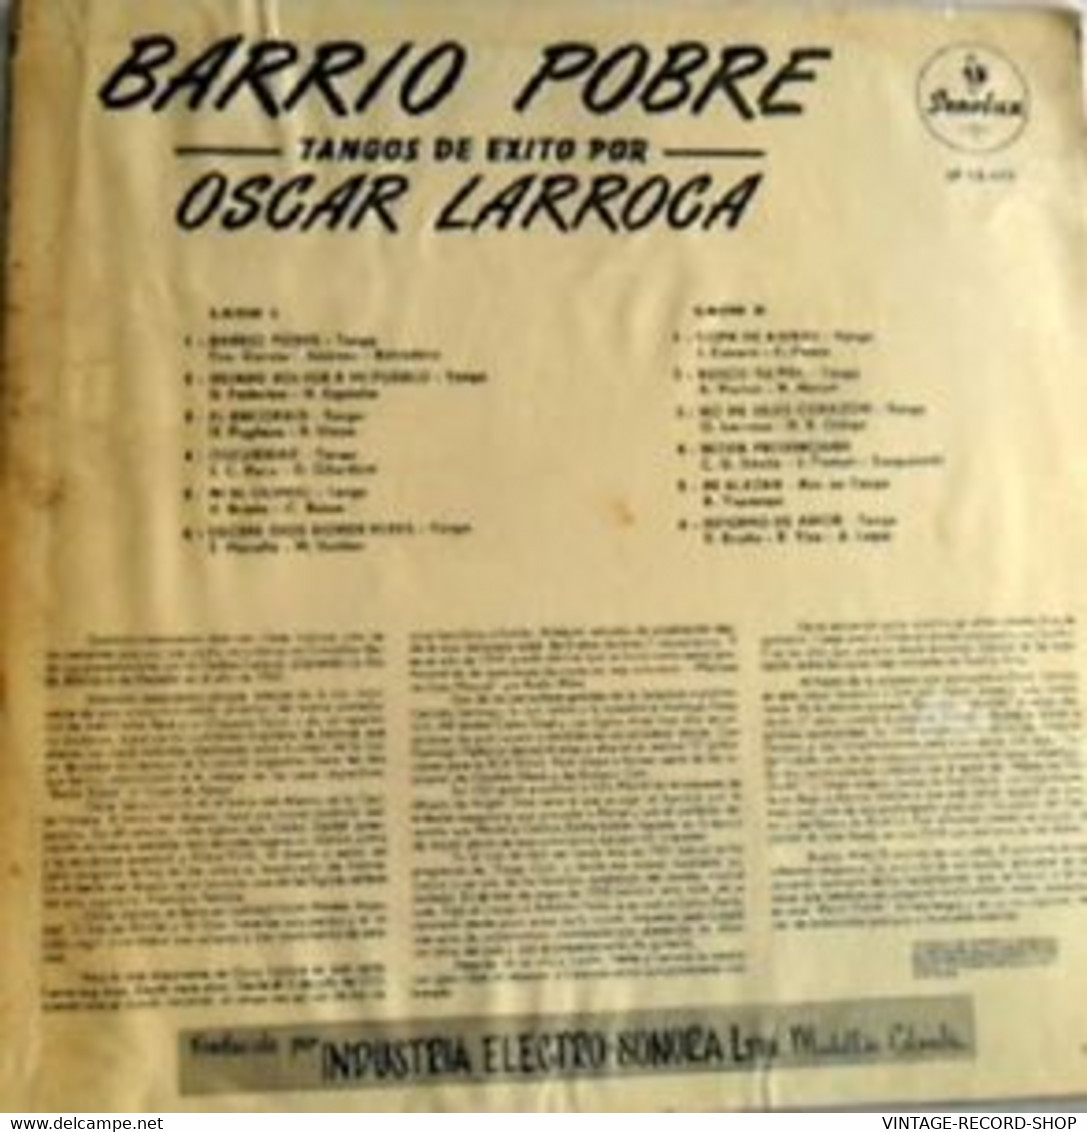 TANGO:OSCAR LARROCA TANGOS DE EXITO"BARRIO POBRE"COLLECTIBLE - Música Del Mundo